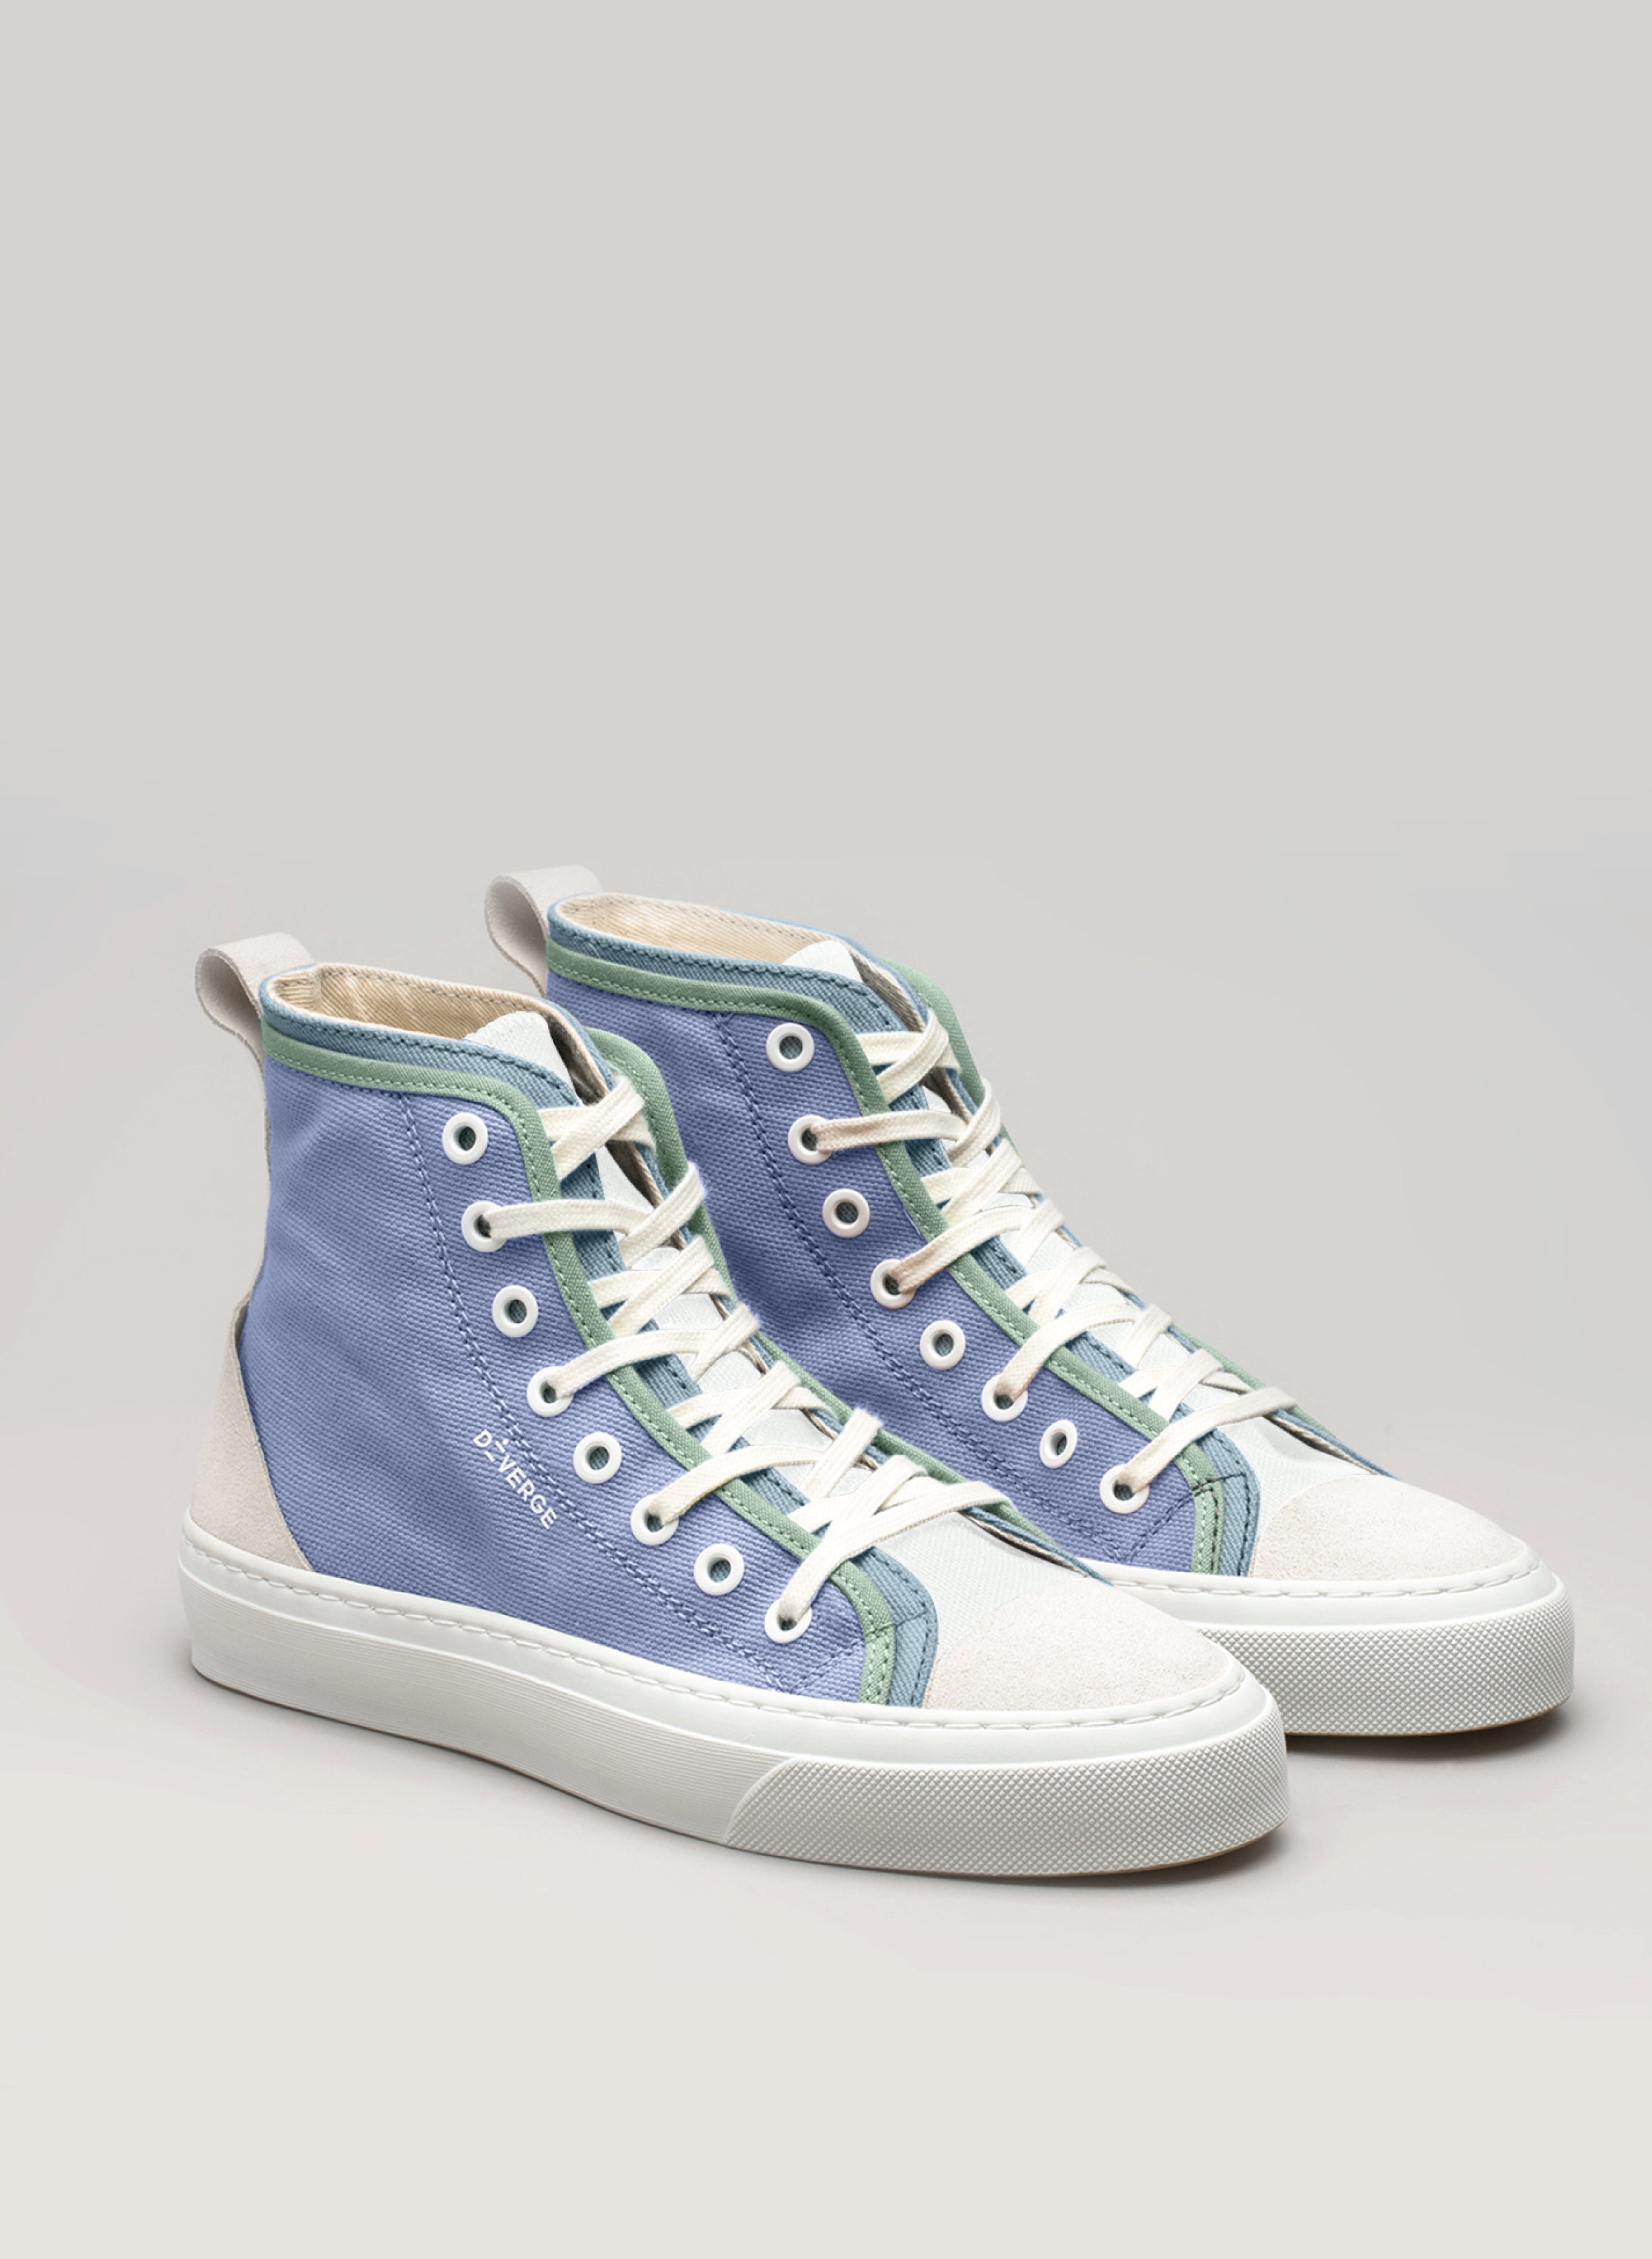 Blaue und grüne High-Top-Schuhe Diverge sneakers  mit weißen Schnürsenkeln, ein Paar Maßschuhe.